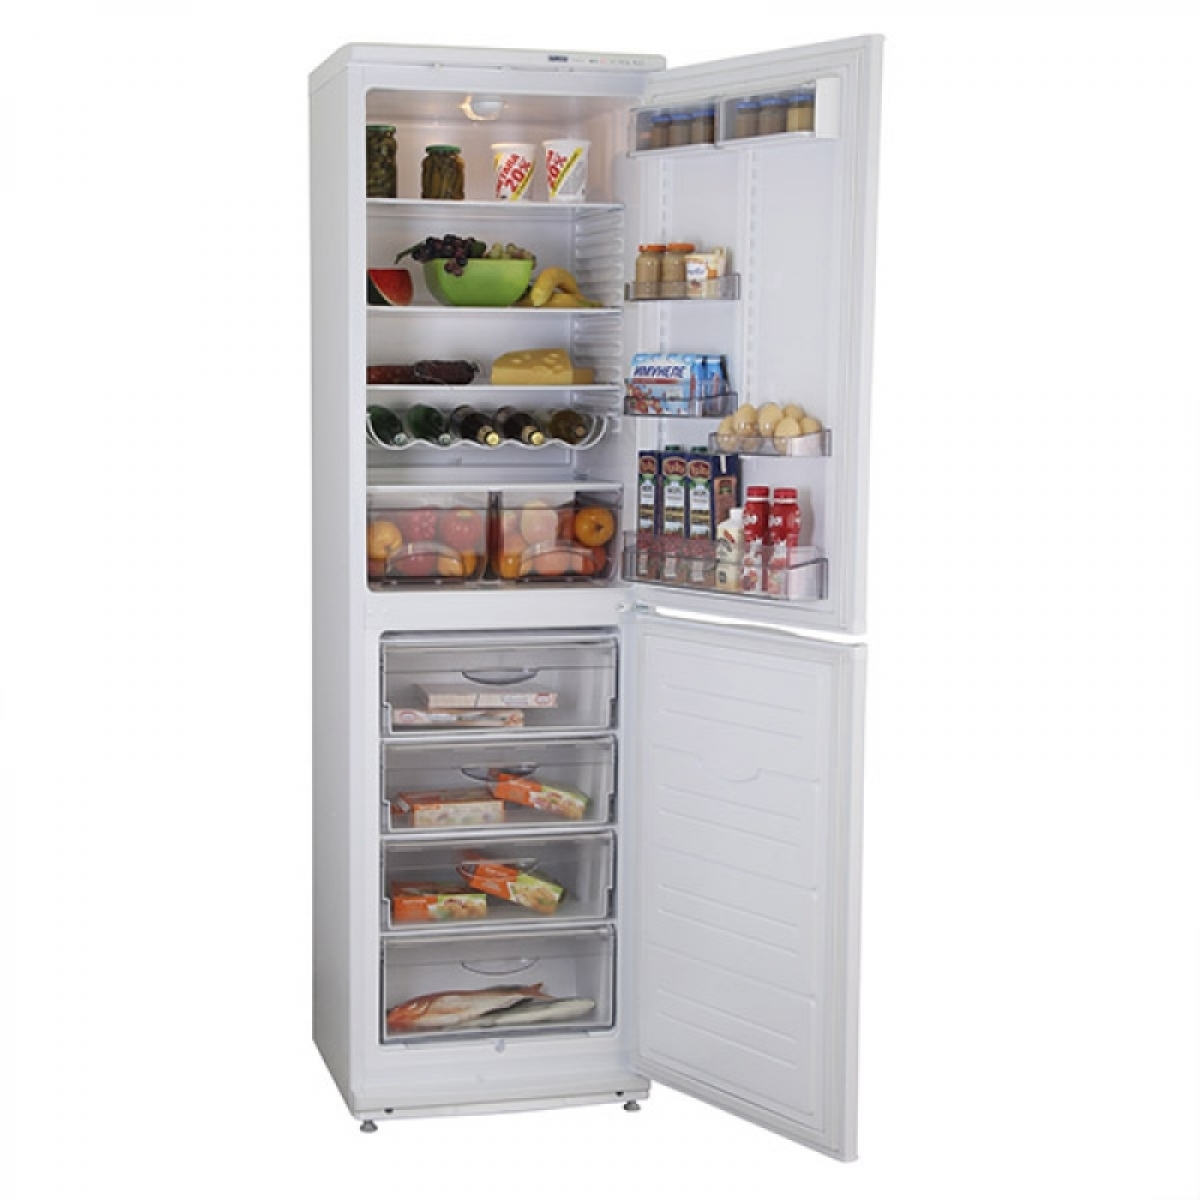 холодильник с 4 полками в морозильной камере